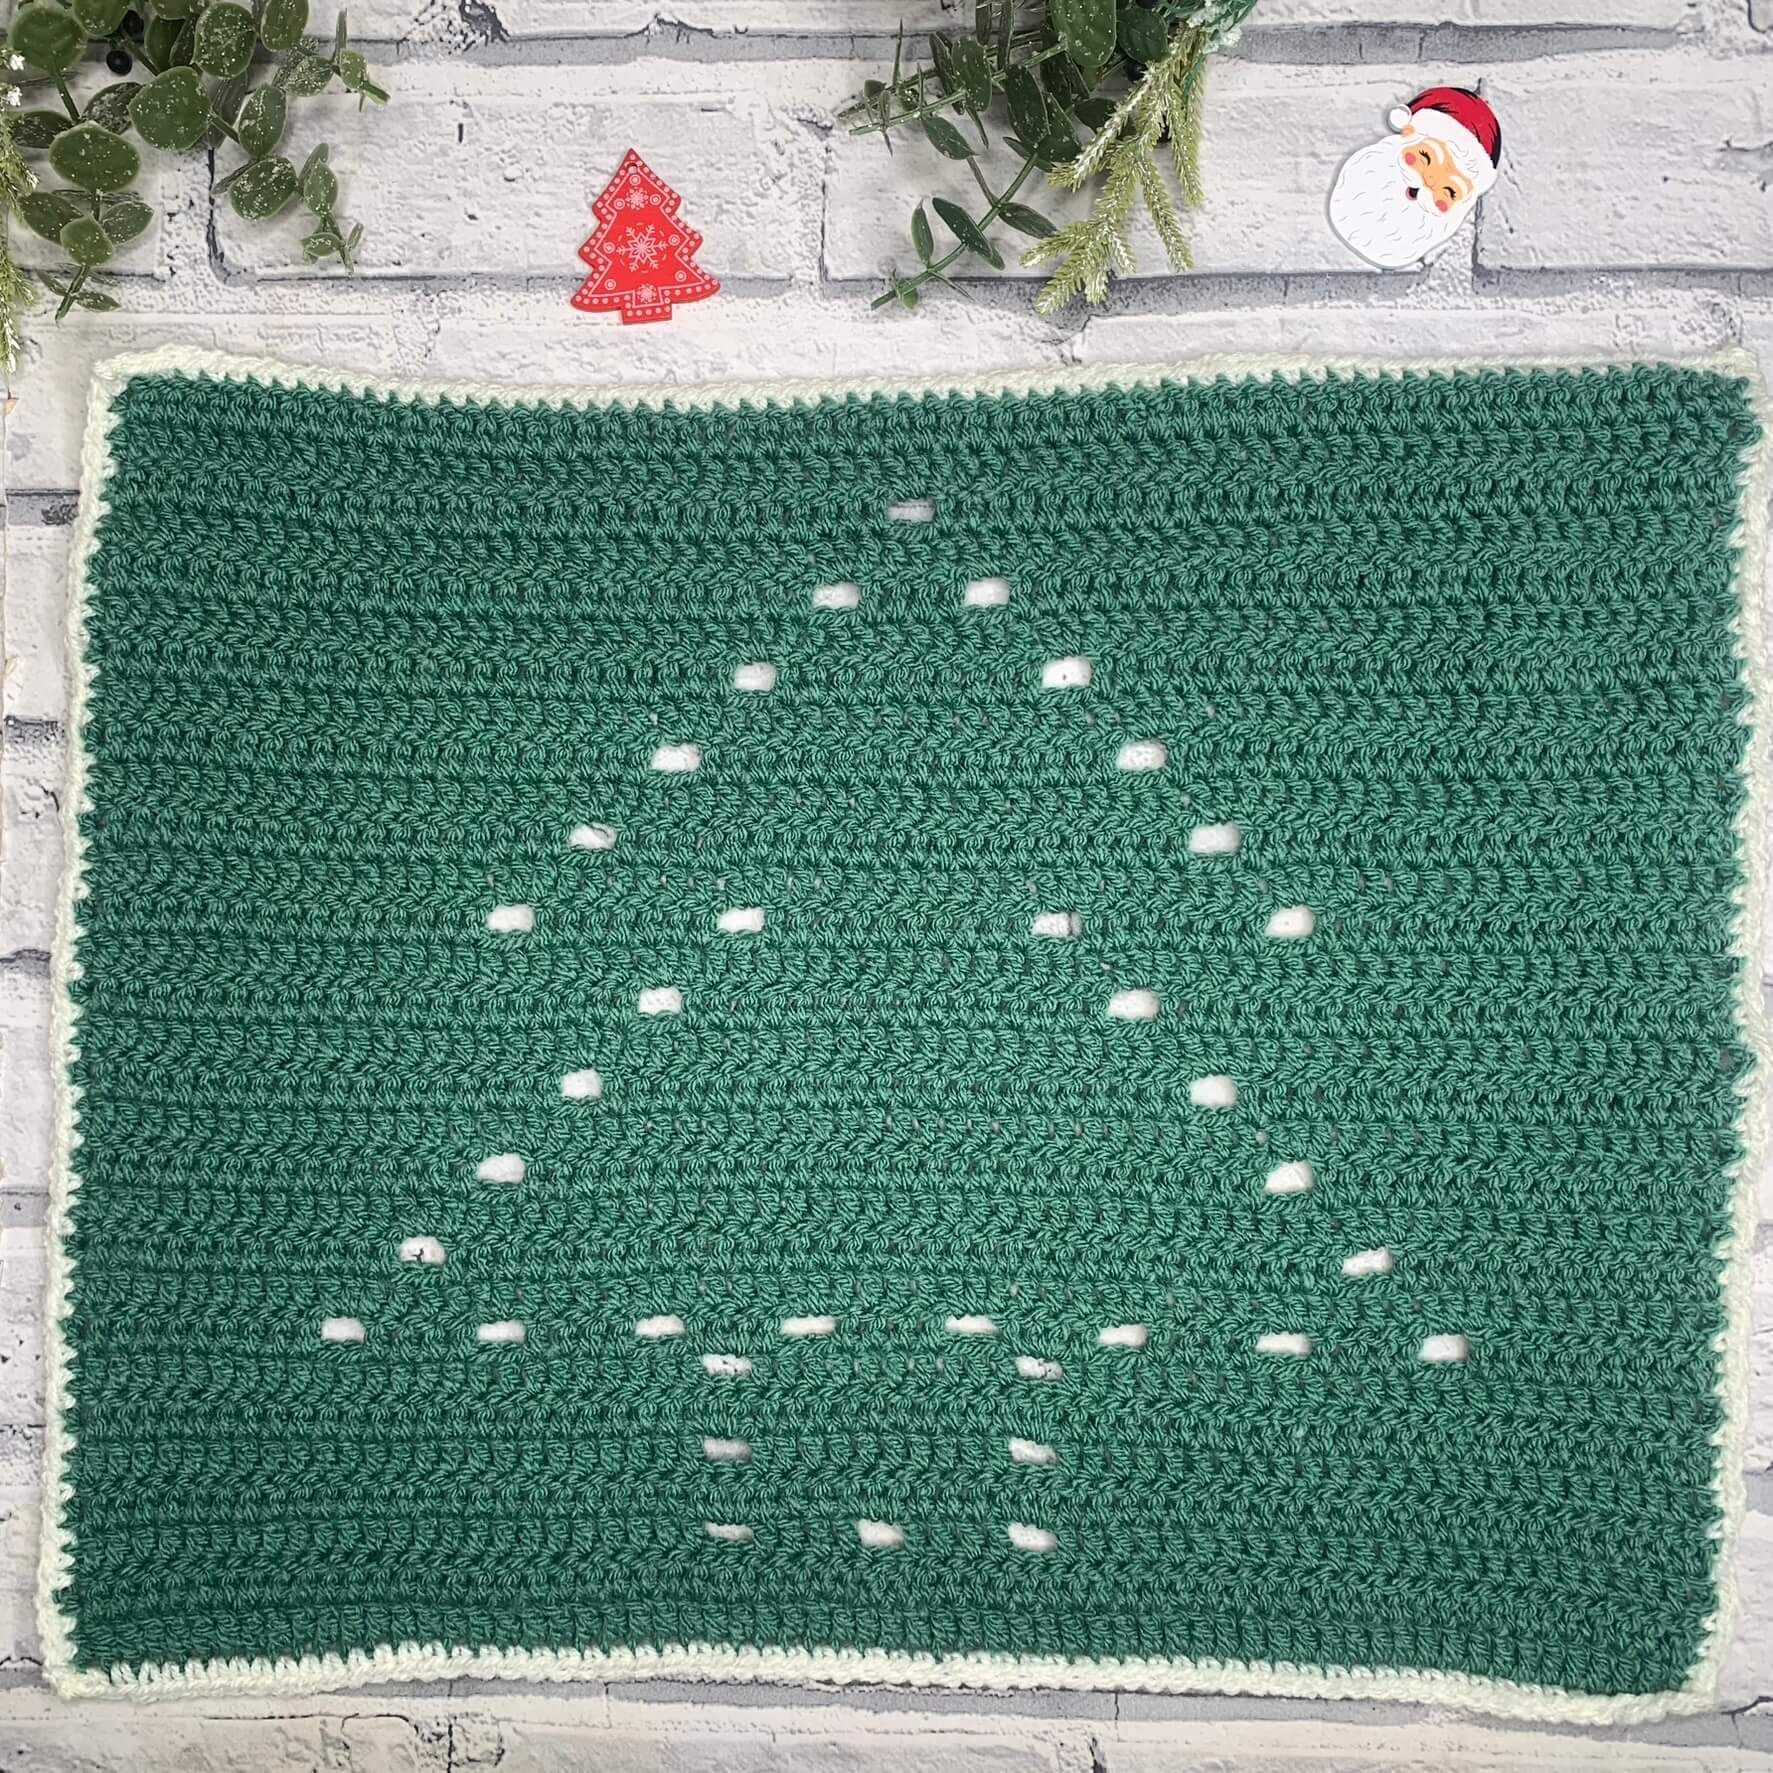 Filet Crochet Christmas Tree Pattern for Crochet Blanket